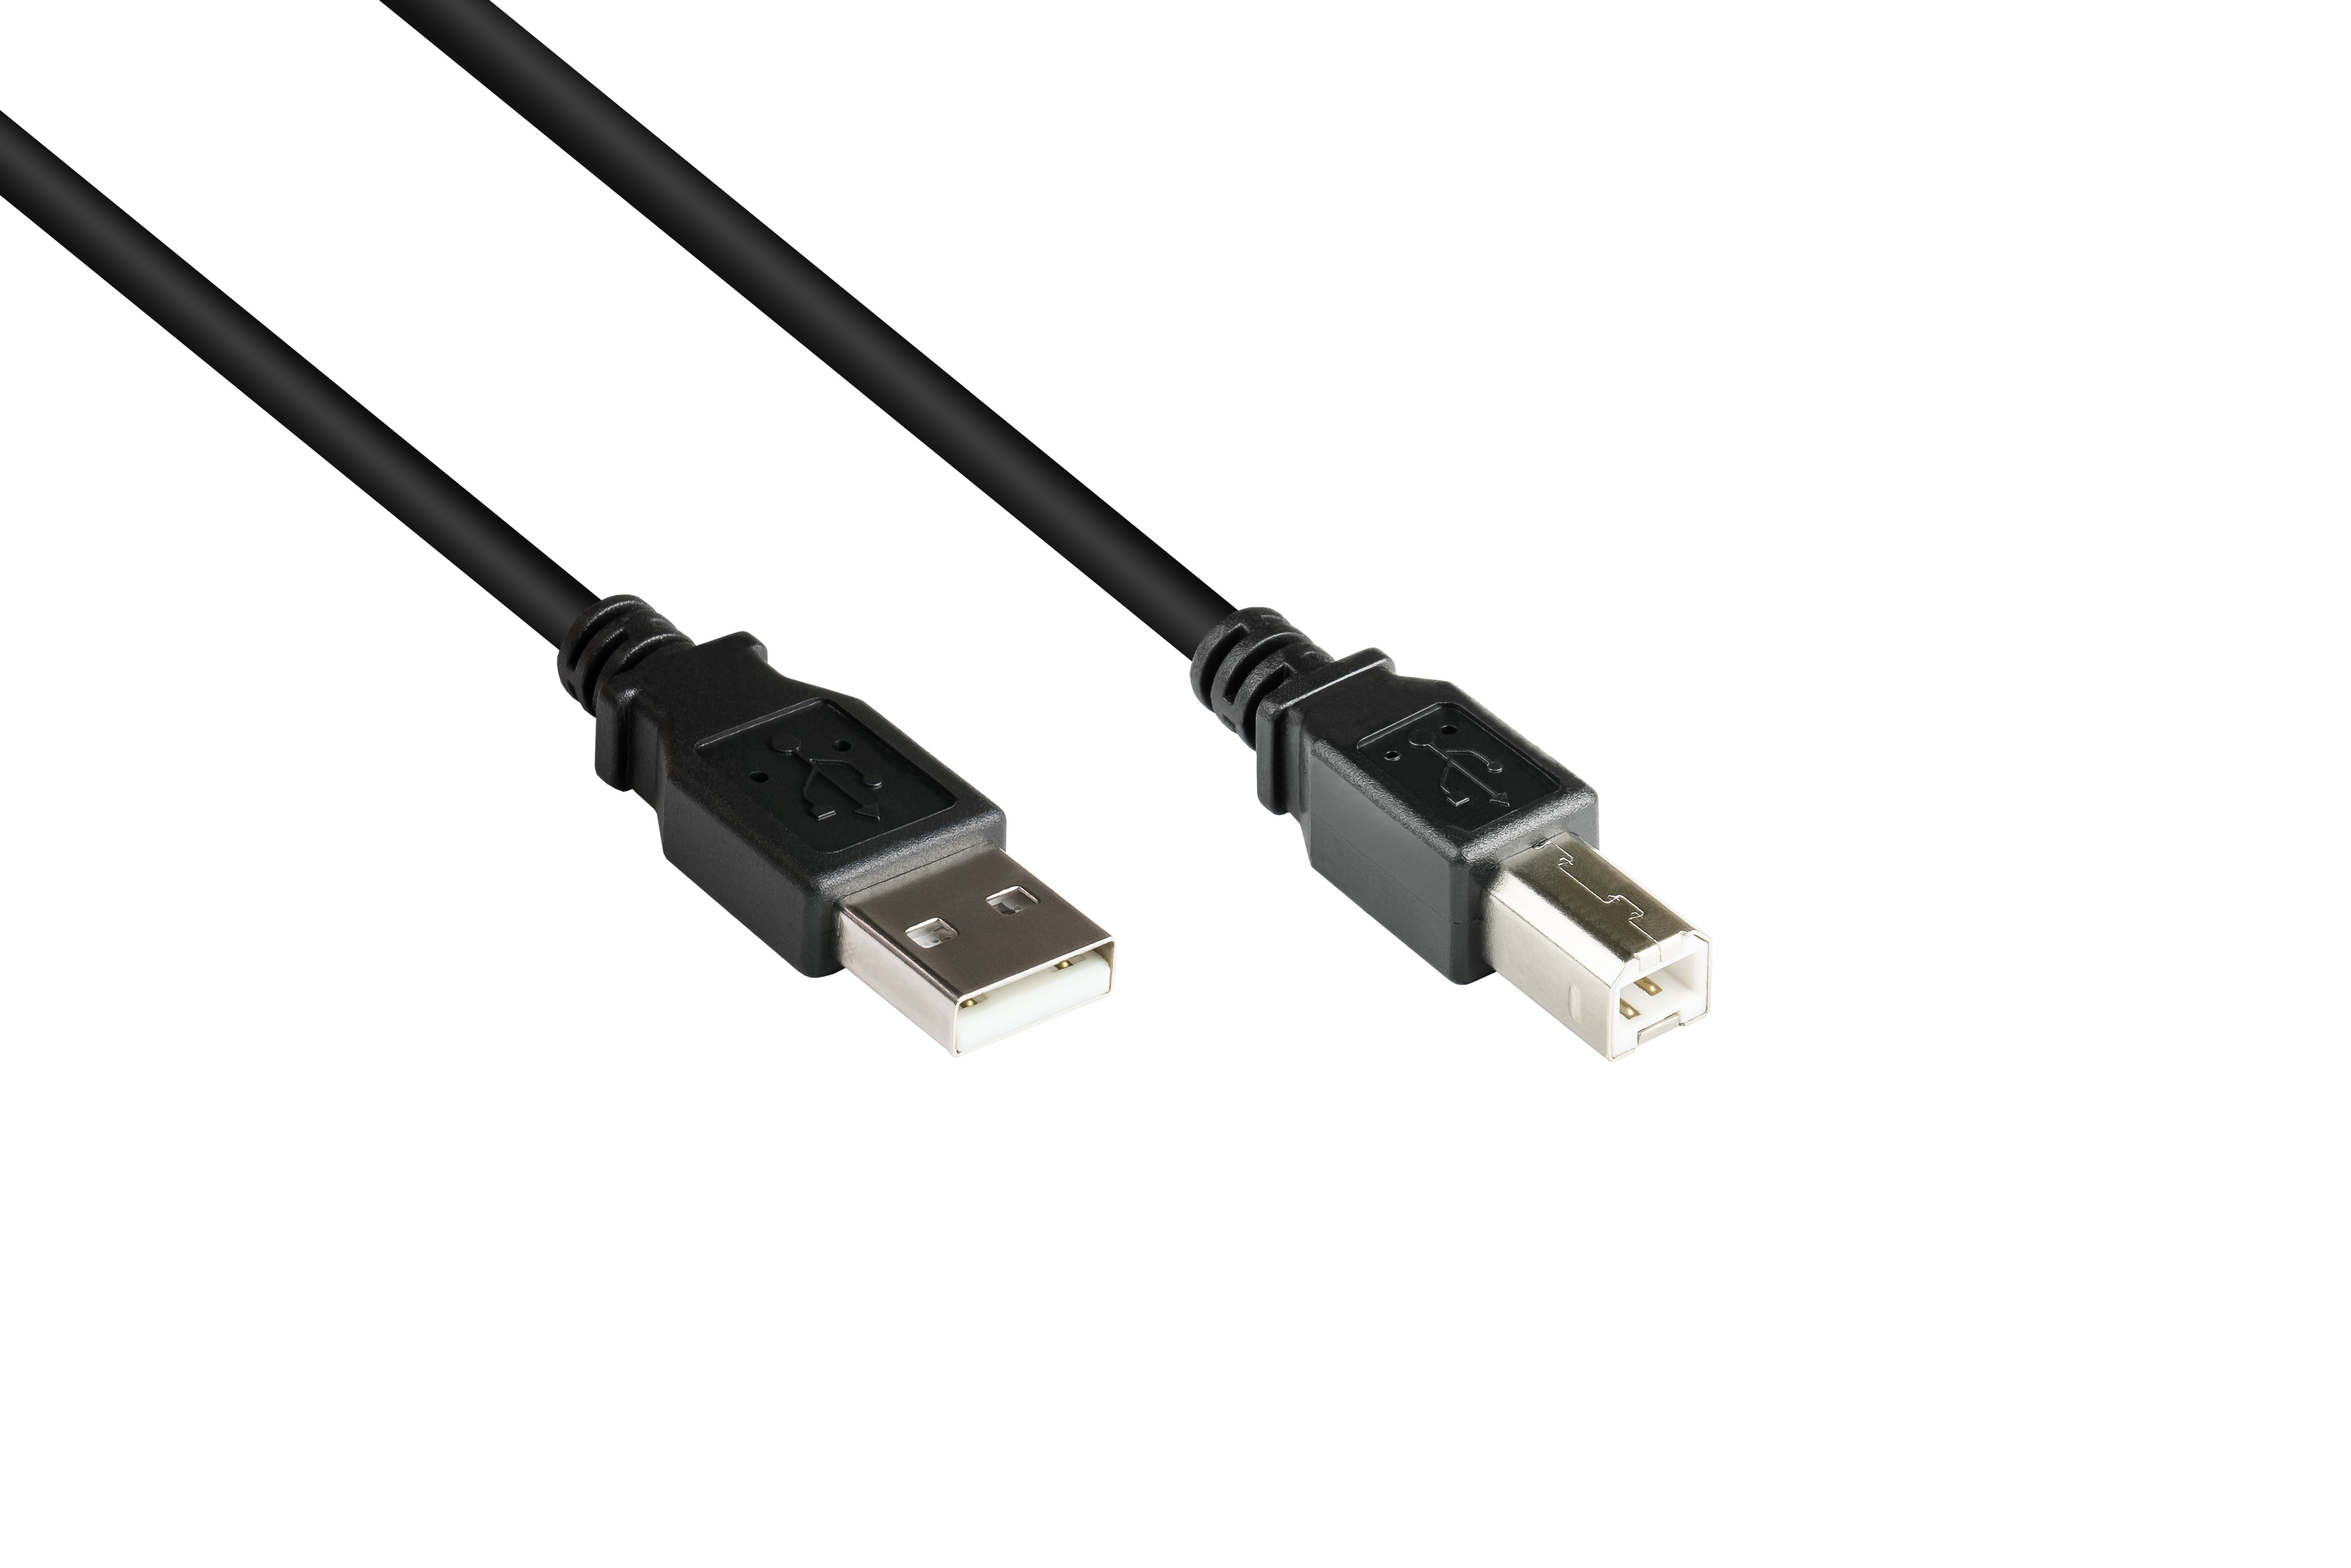 B, Stecker schwarz an A Stecker GOOD USB Anschlusskabel CONNECTIONS 2.0